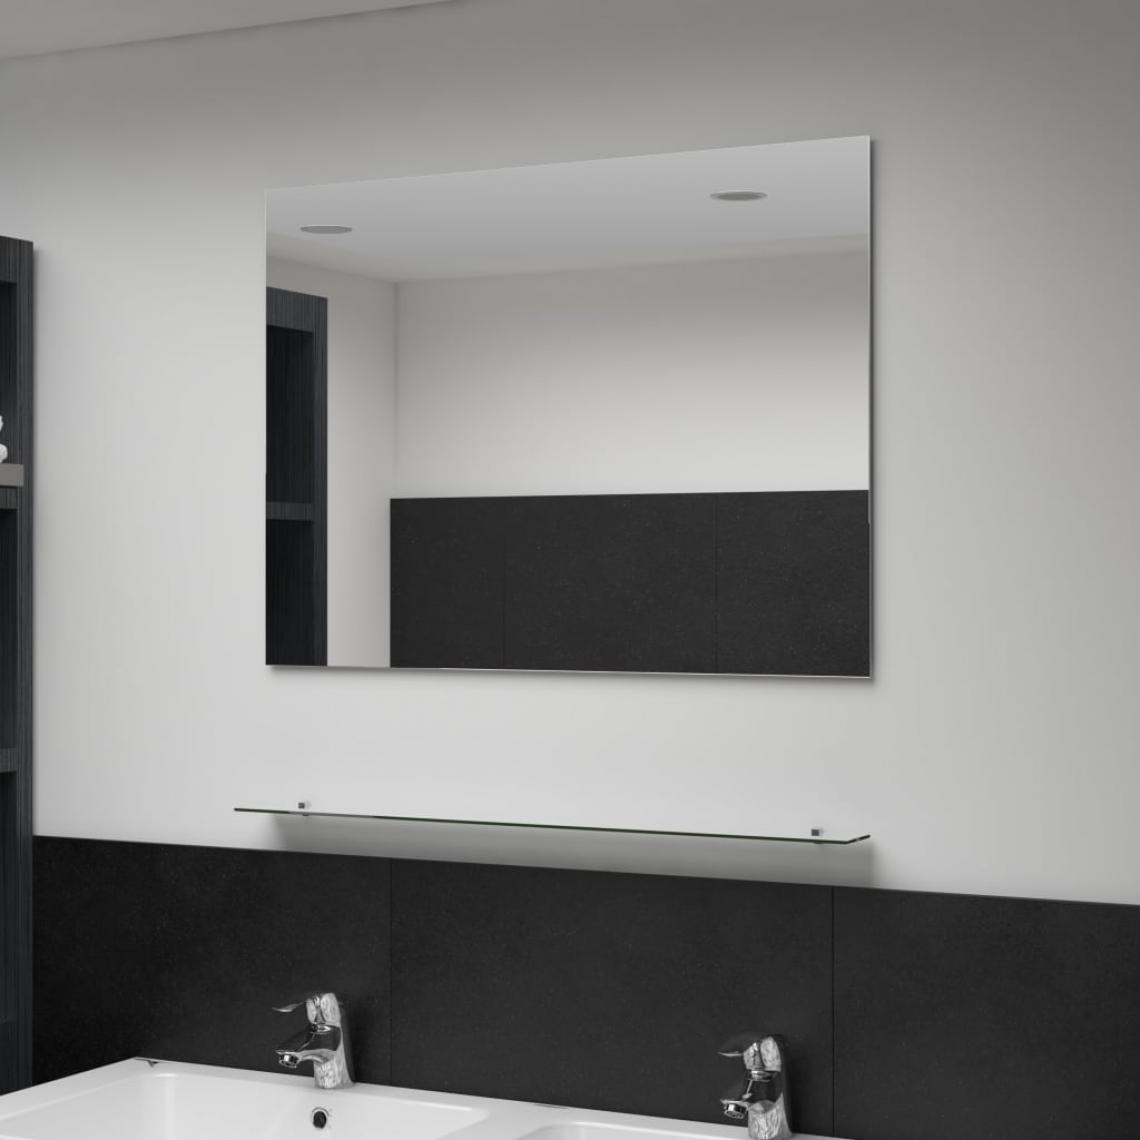 Chunhelife - Miroir mural avec étagère 80x60 cm Verre trempé - Miroir de salle de bain